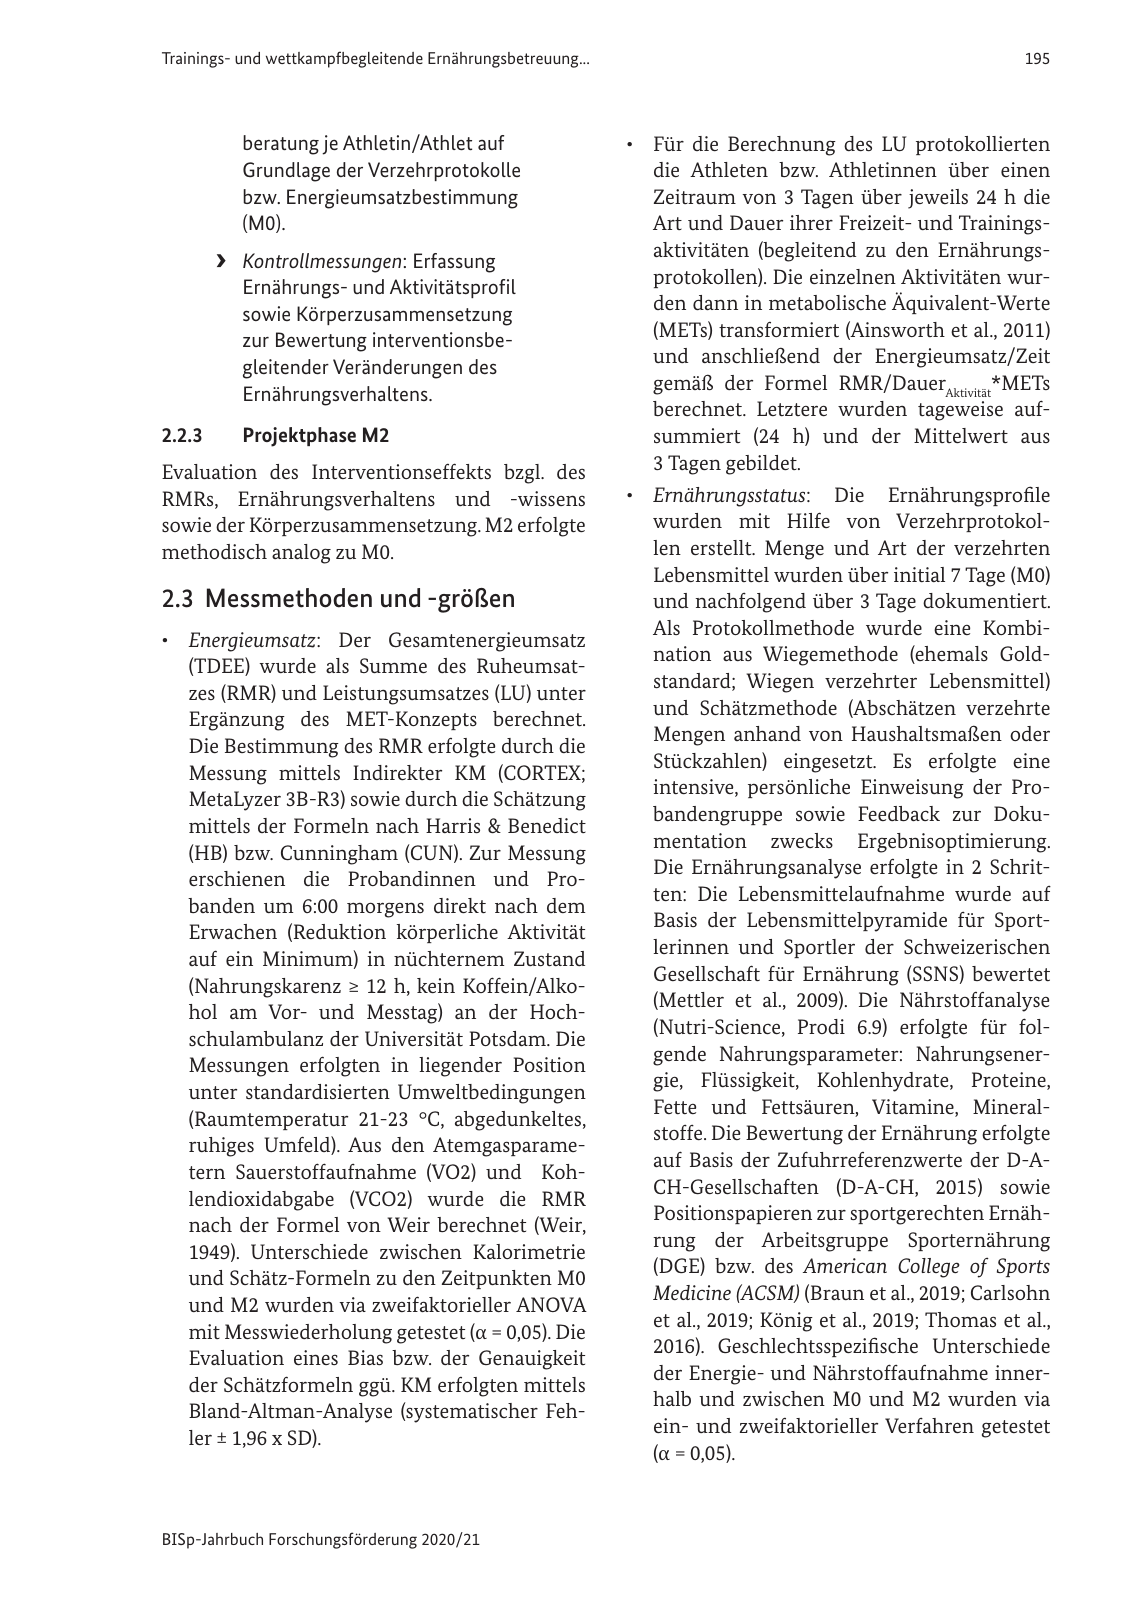 Vorschau BISp-Jahrbuch 2020/21 Seite 197